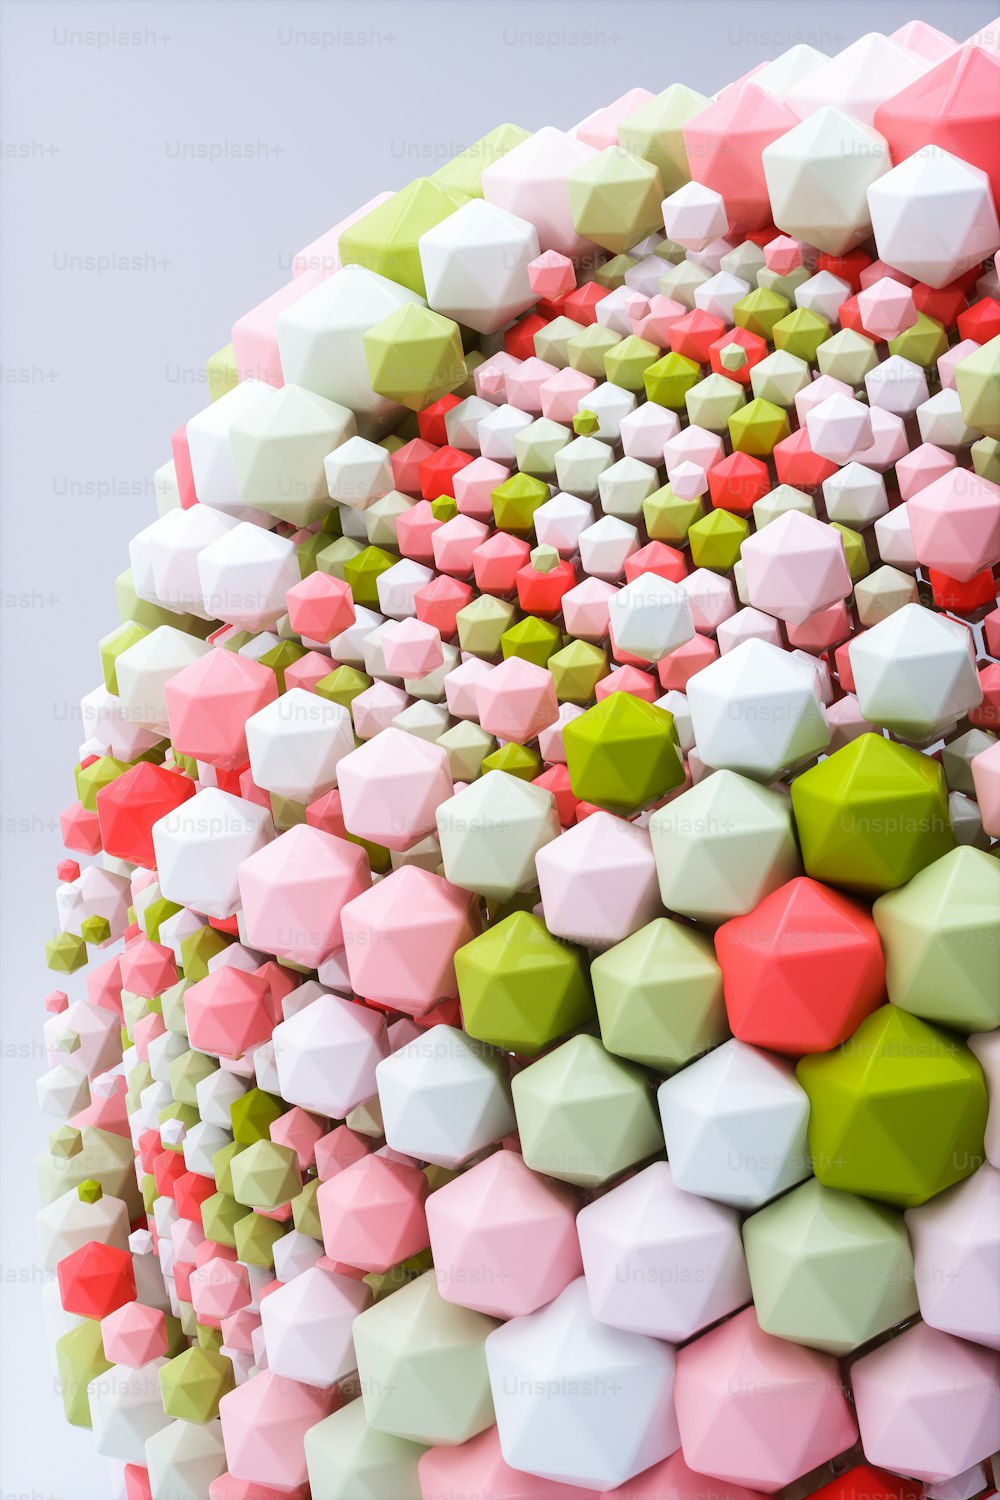 큐브와 육각형 모양으로 만든 다채로운 조각